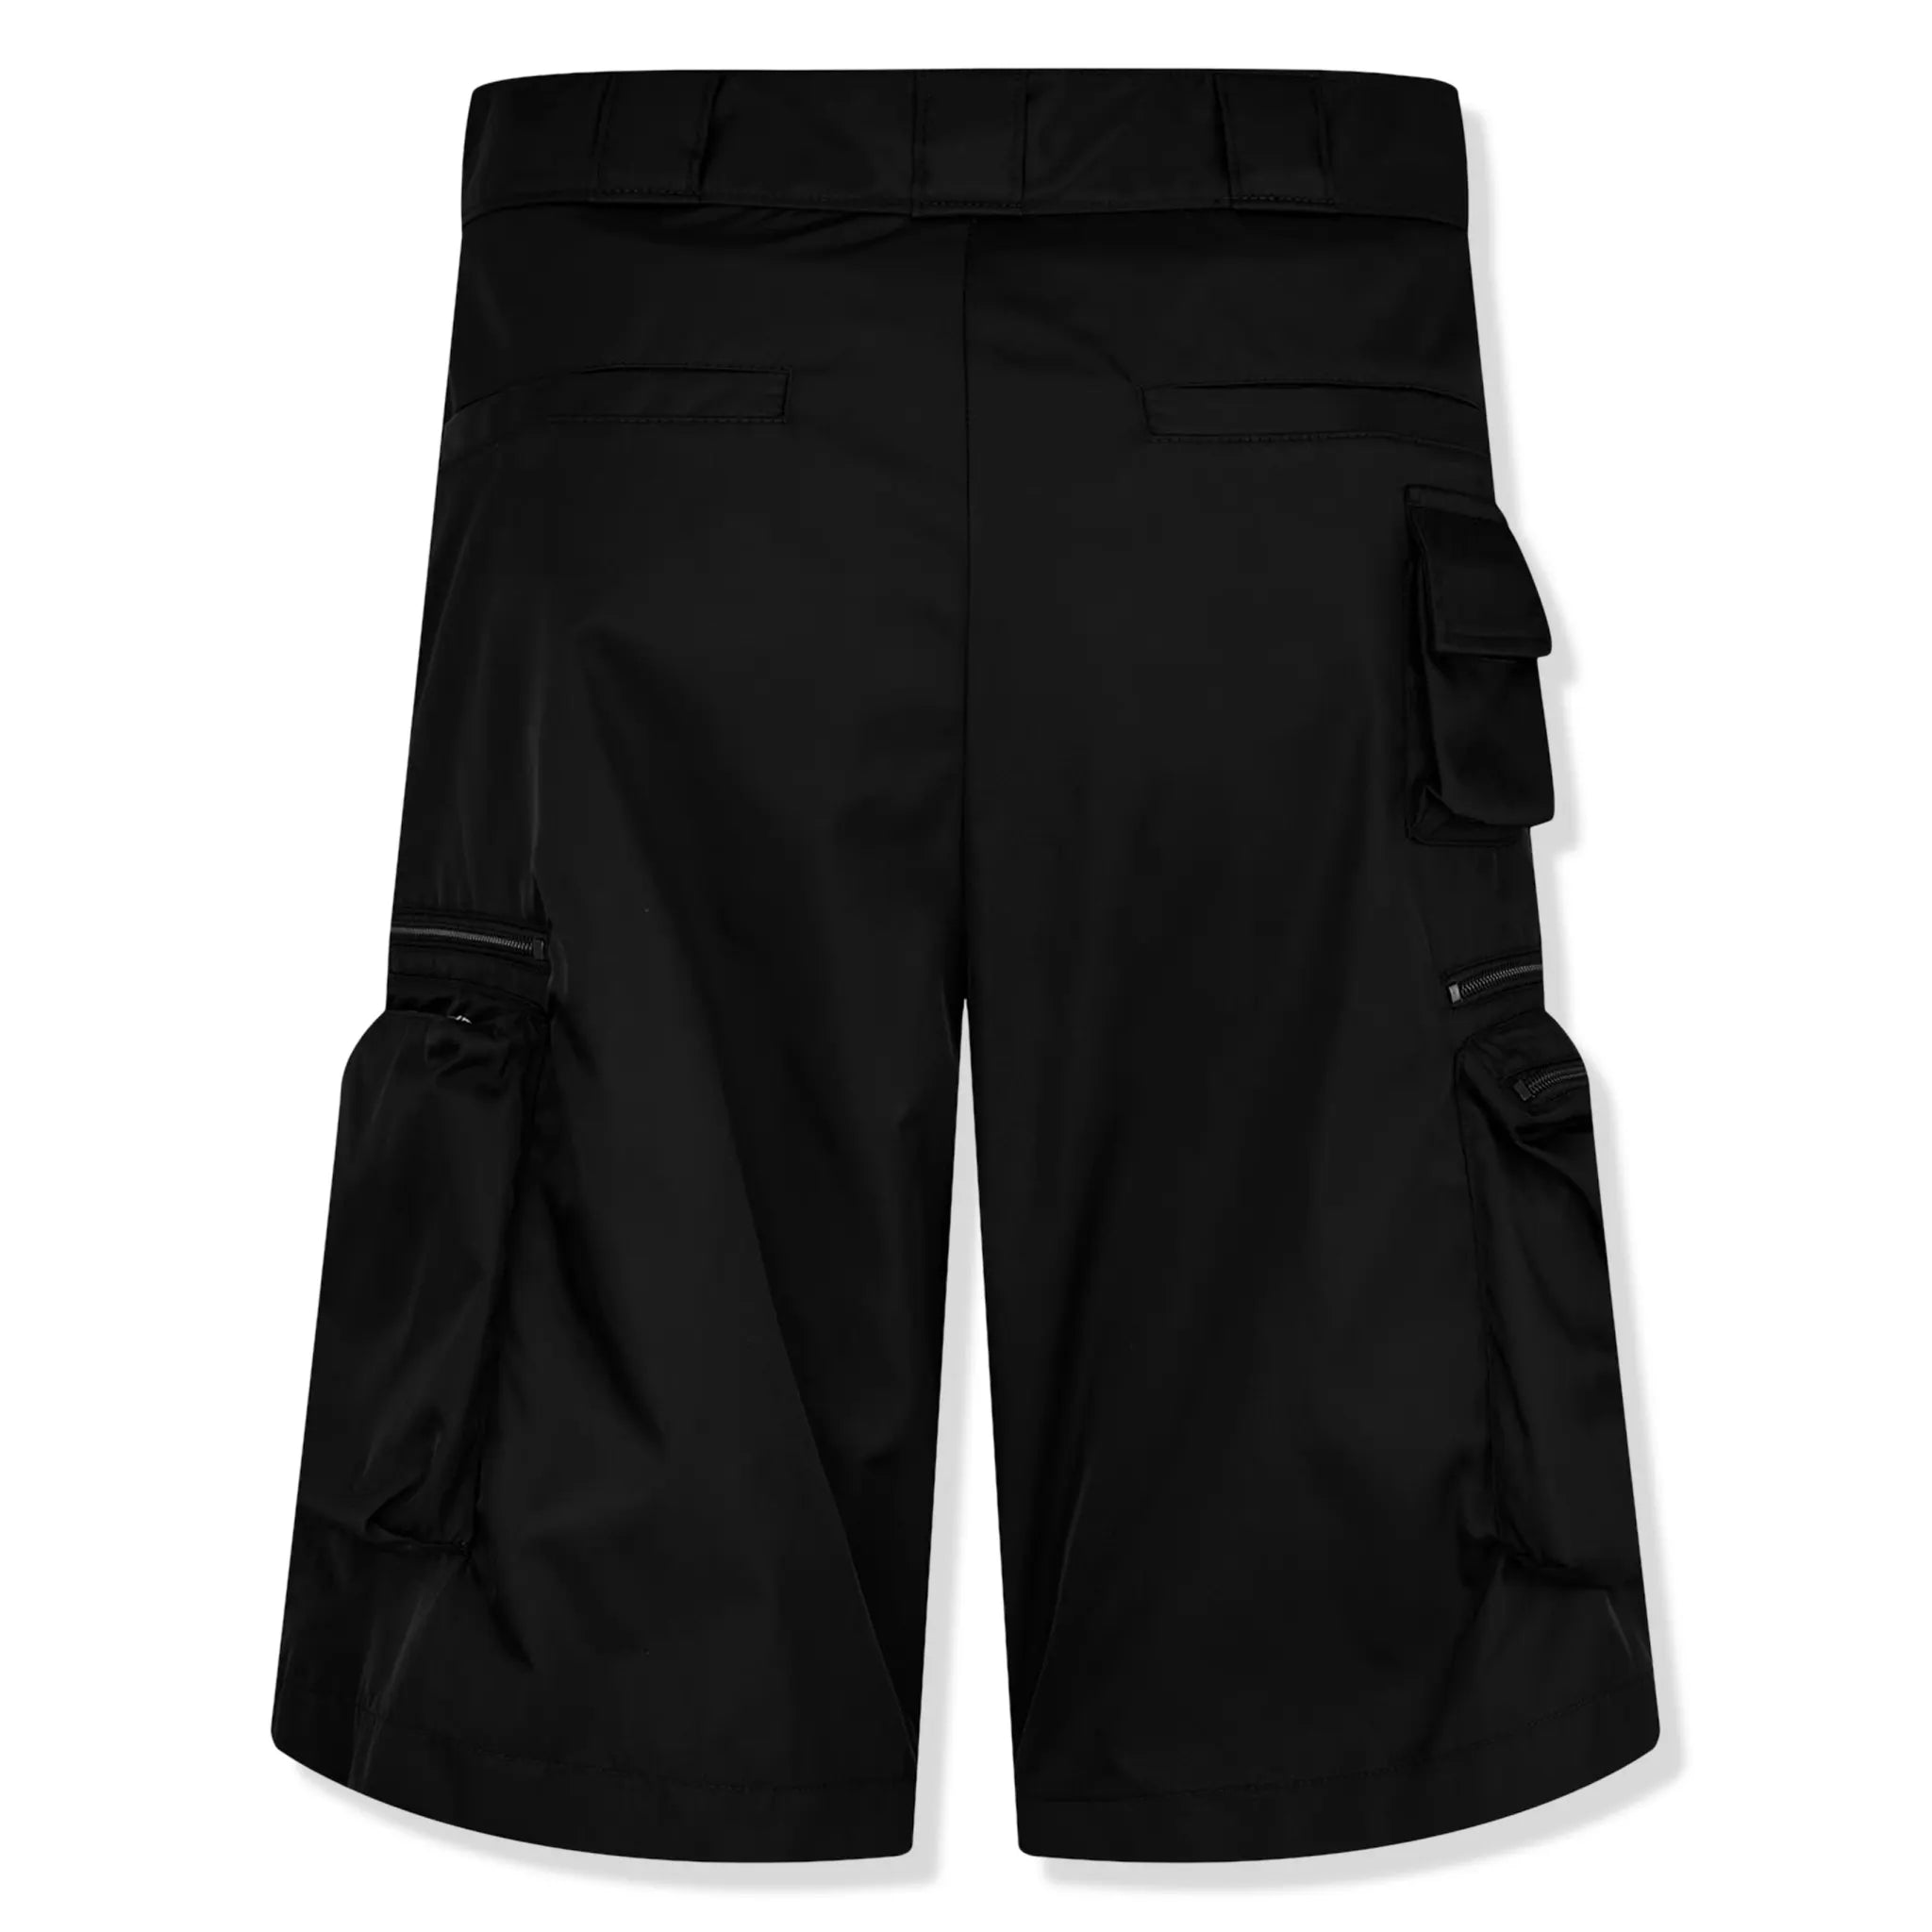 Back view of Prada Bermudas Nylon Black Shorts SPH393_1WQ8_F0002_S_OOO